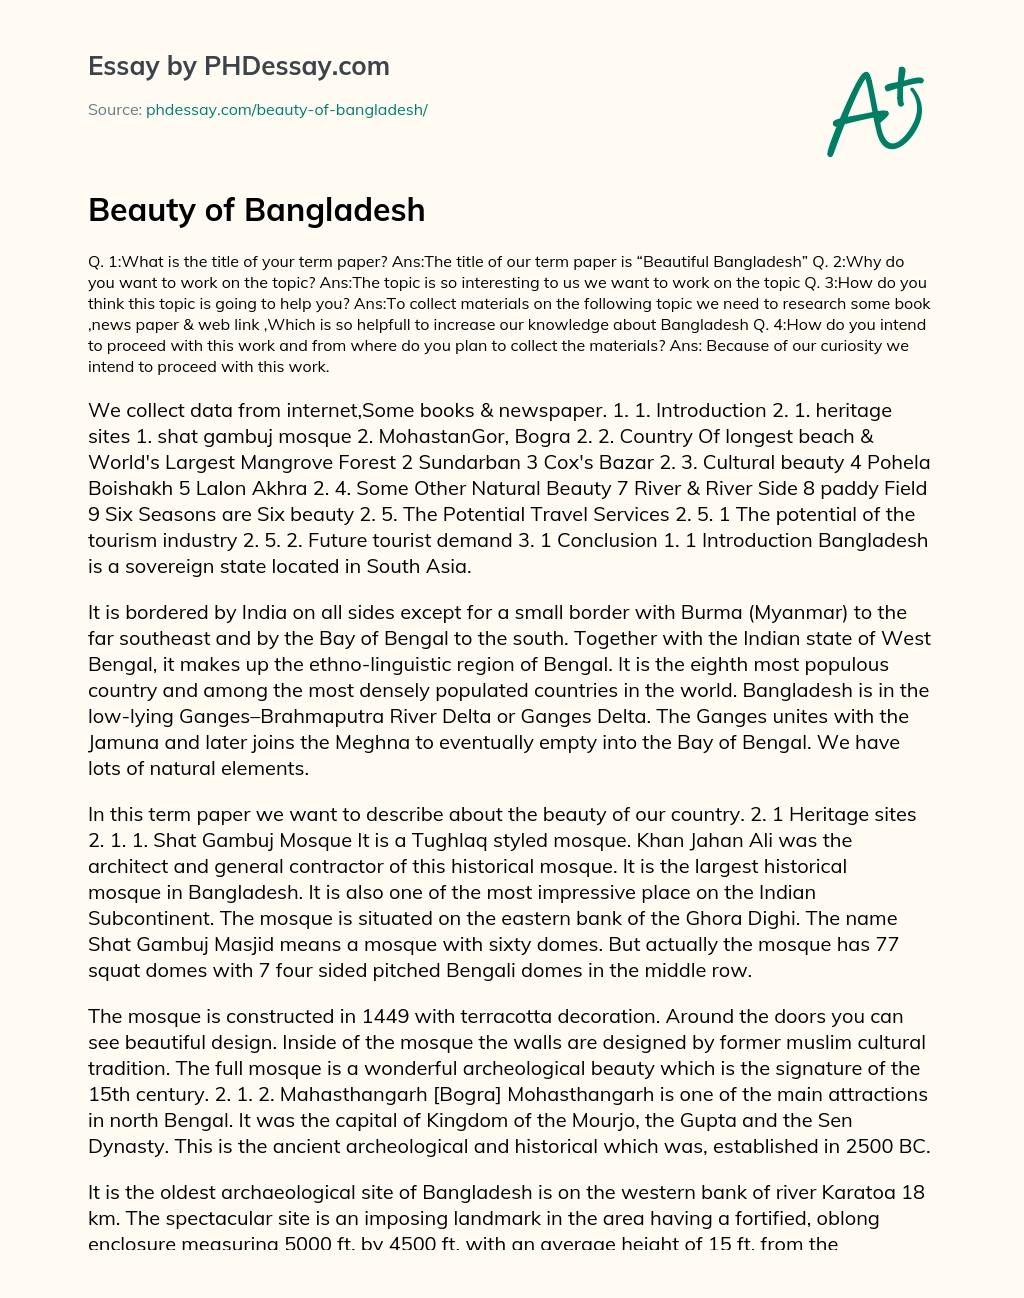 natural beauty of bangladesh essay